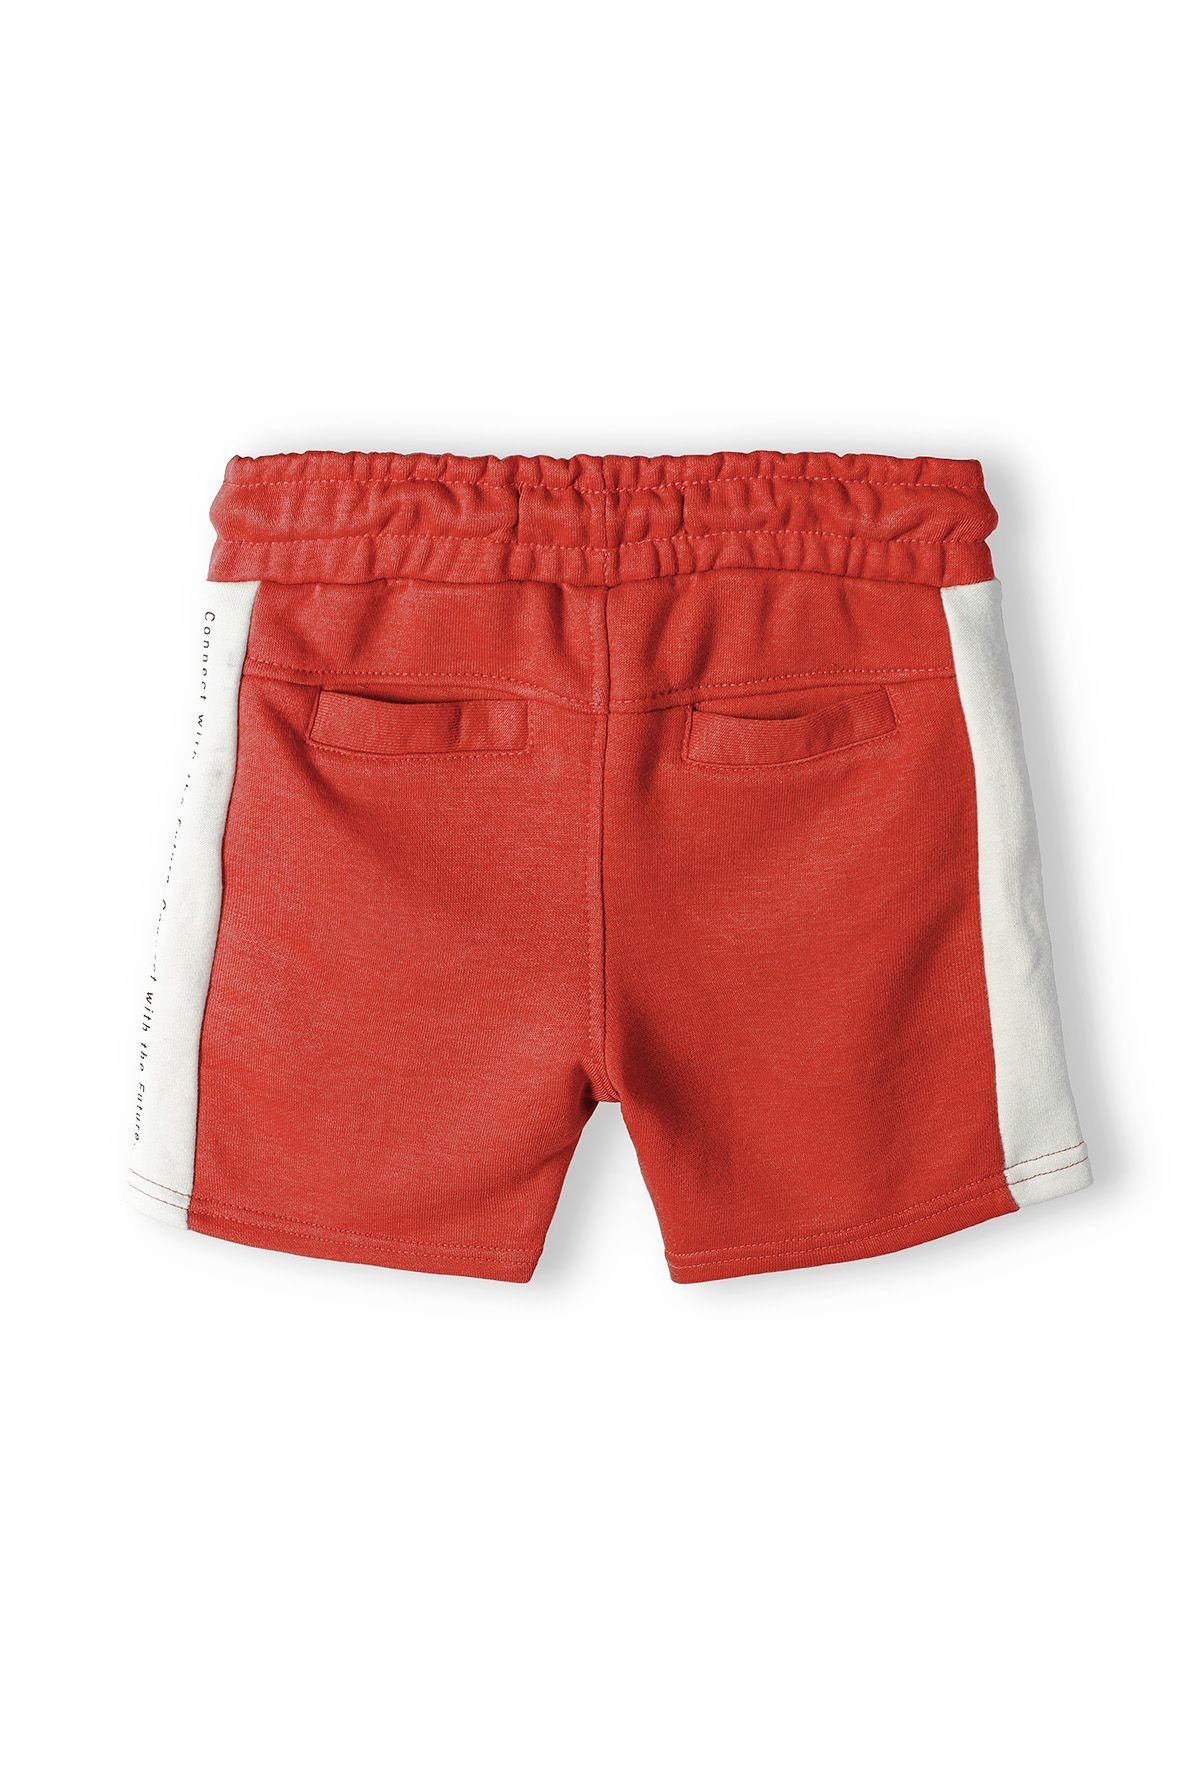 MINOTI Sweatshorts Shorts Rot (12m-14y)